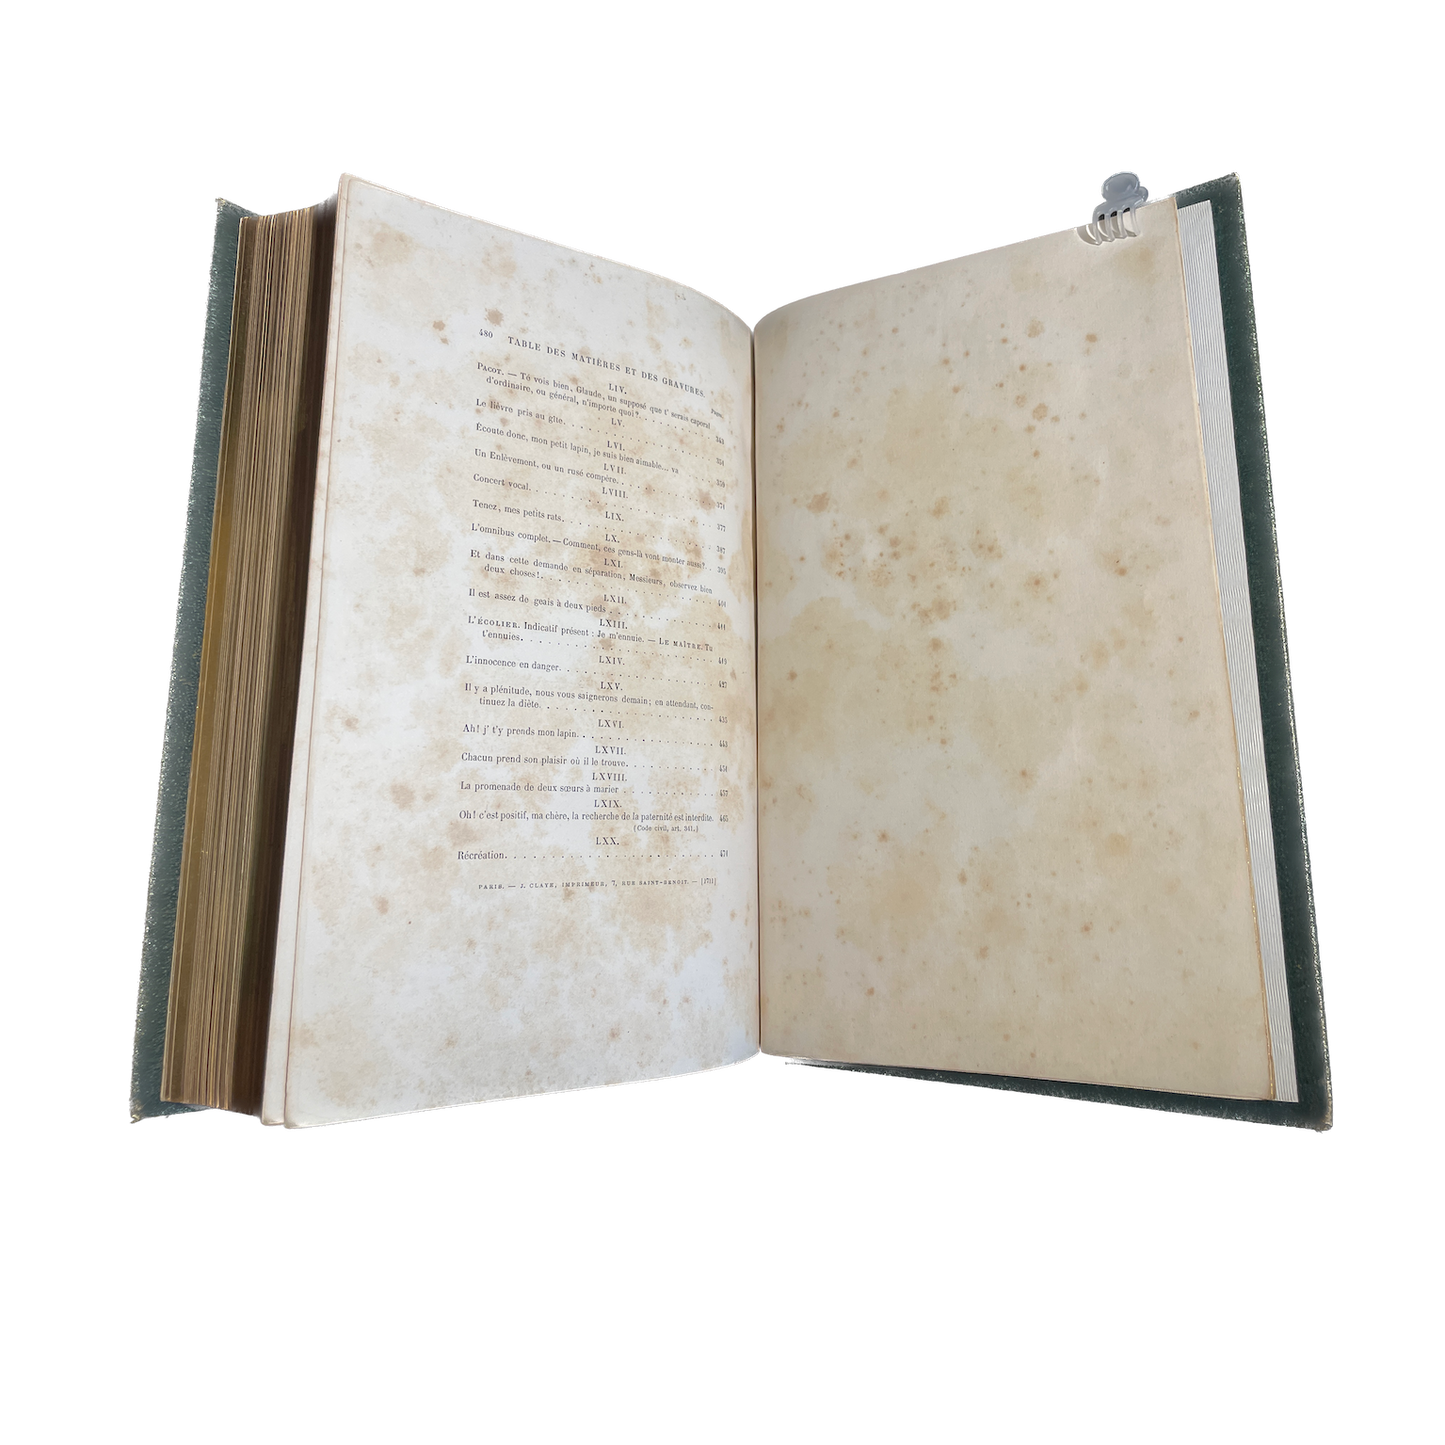 1869 - GRANDVILLE (JEAN JACQUES).Les Métamorphoses du jour. Nouvelle édition revue par Jules Janin